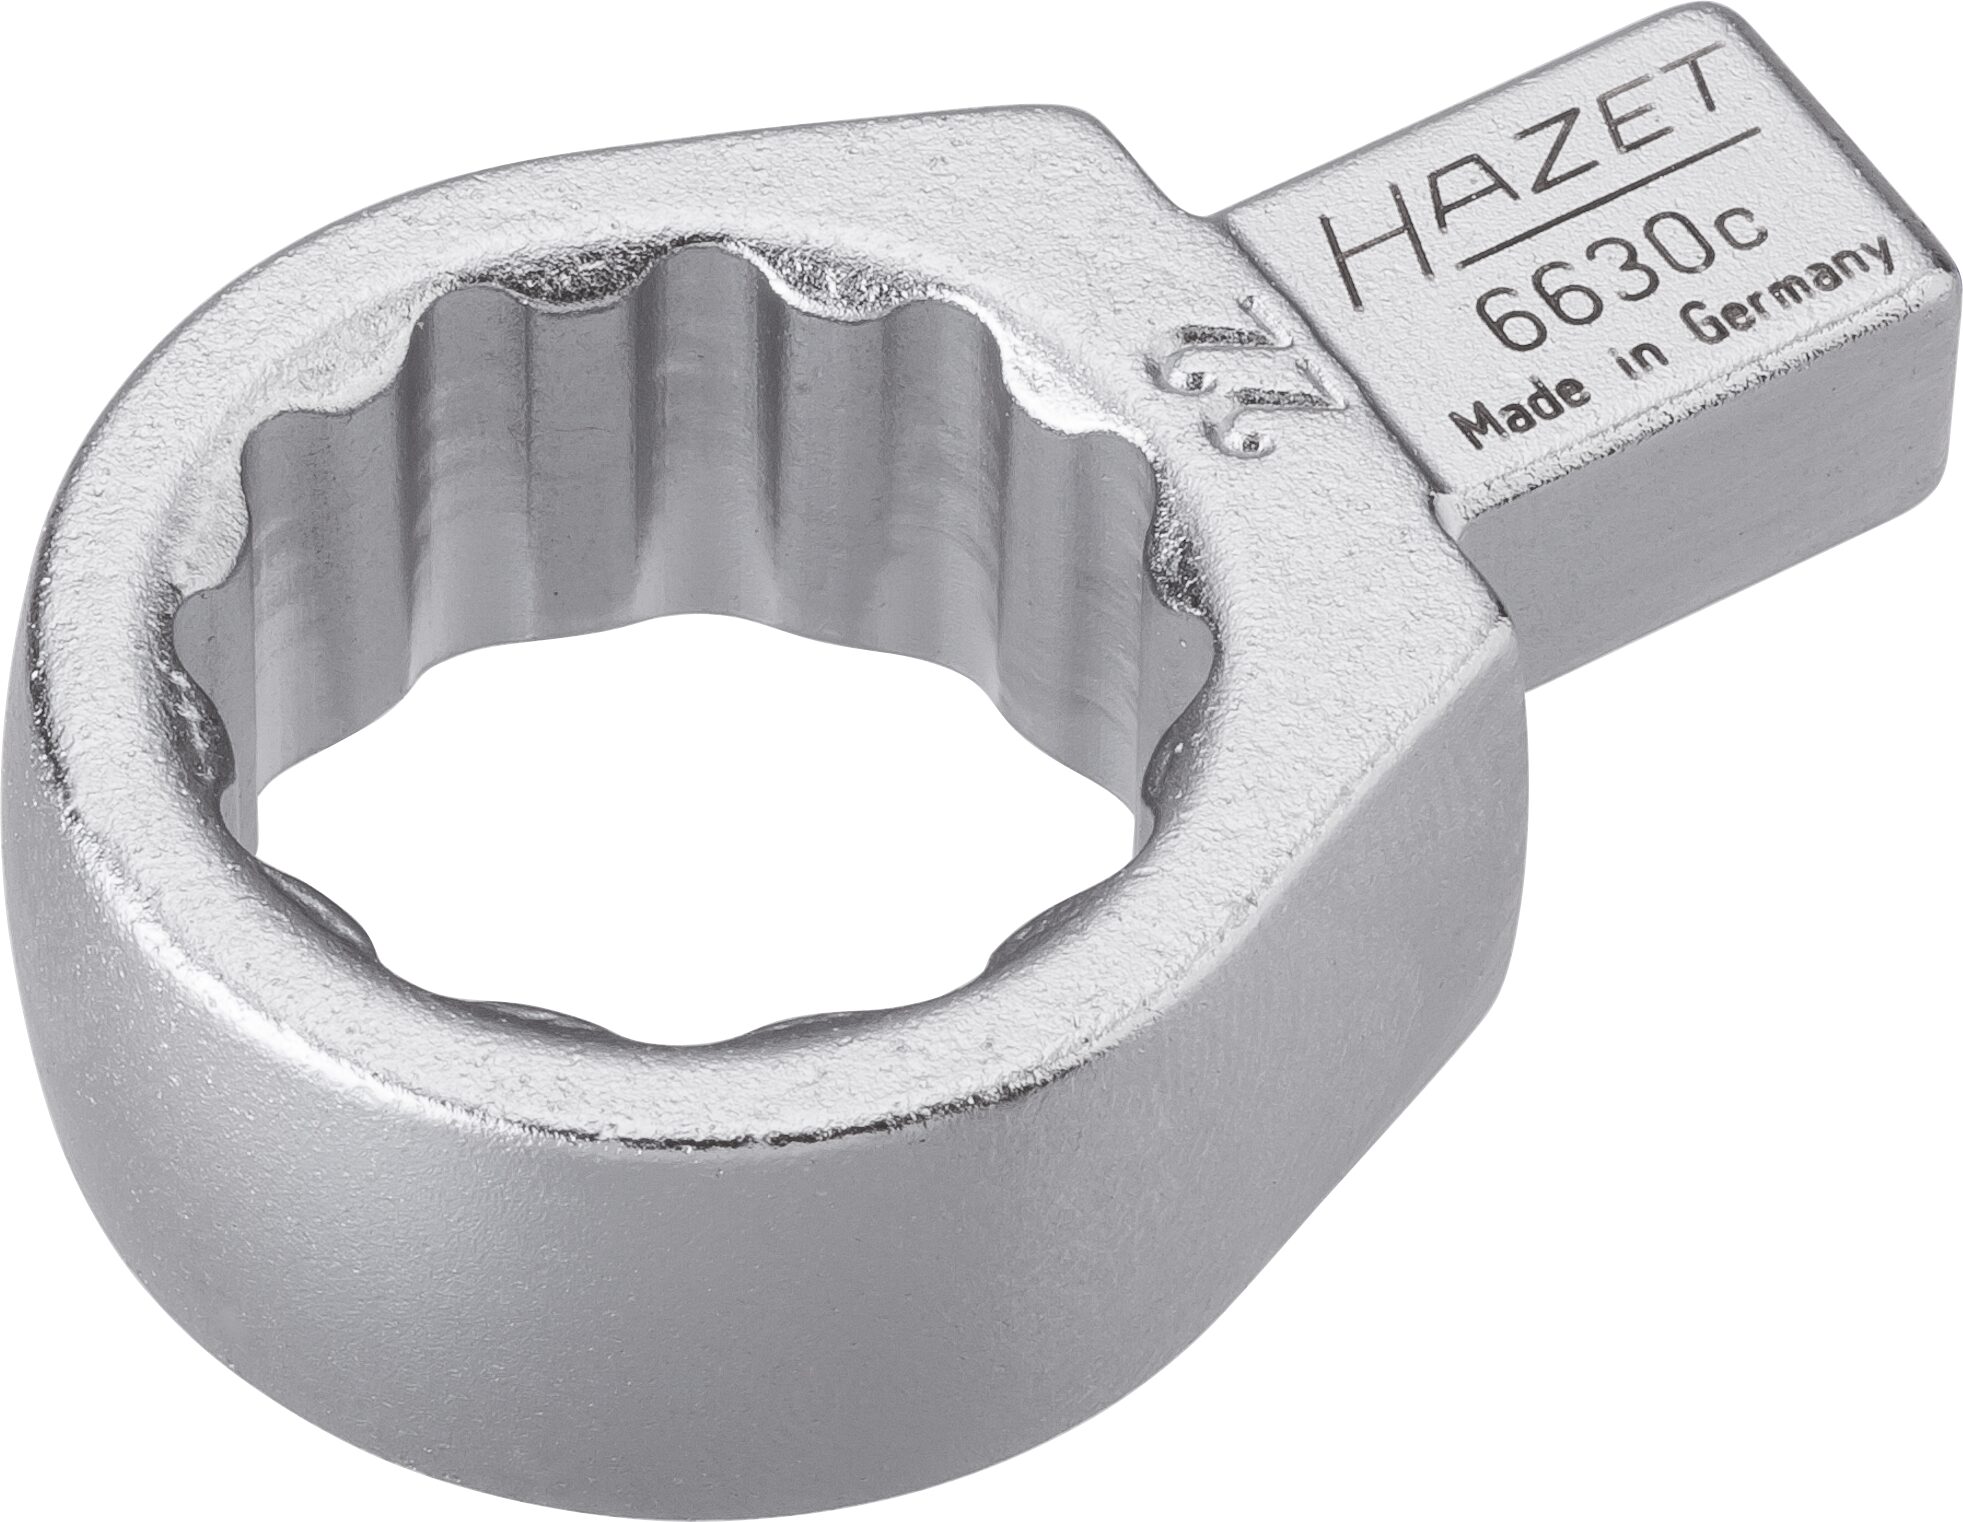 HAZET Einsteck-Ringschlüssel 6630C-22 · Einsteck-Vierkant 9 x 12 mm · Außen Doppel-Sechskant-Tractionsprofil · 22 mm